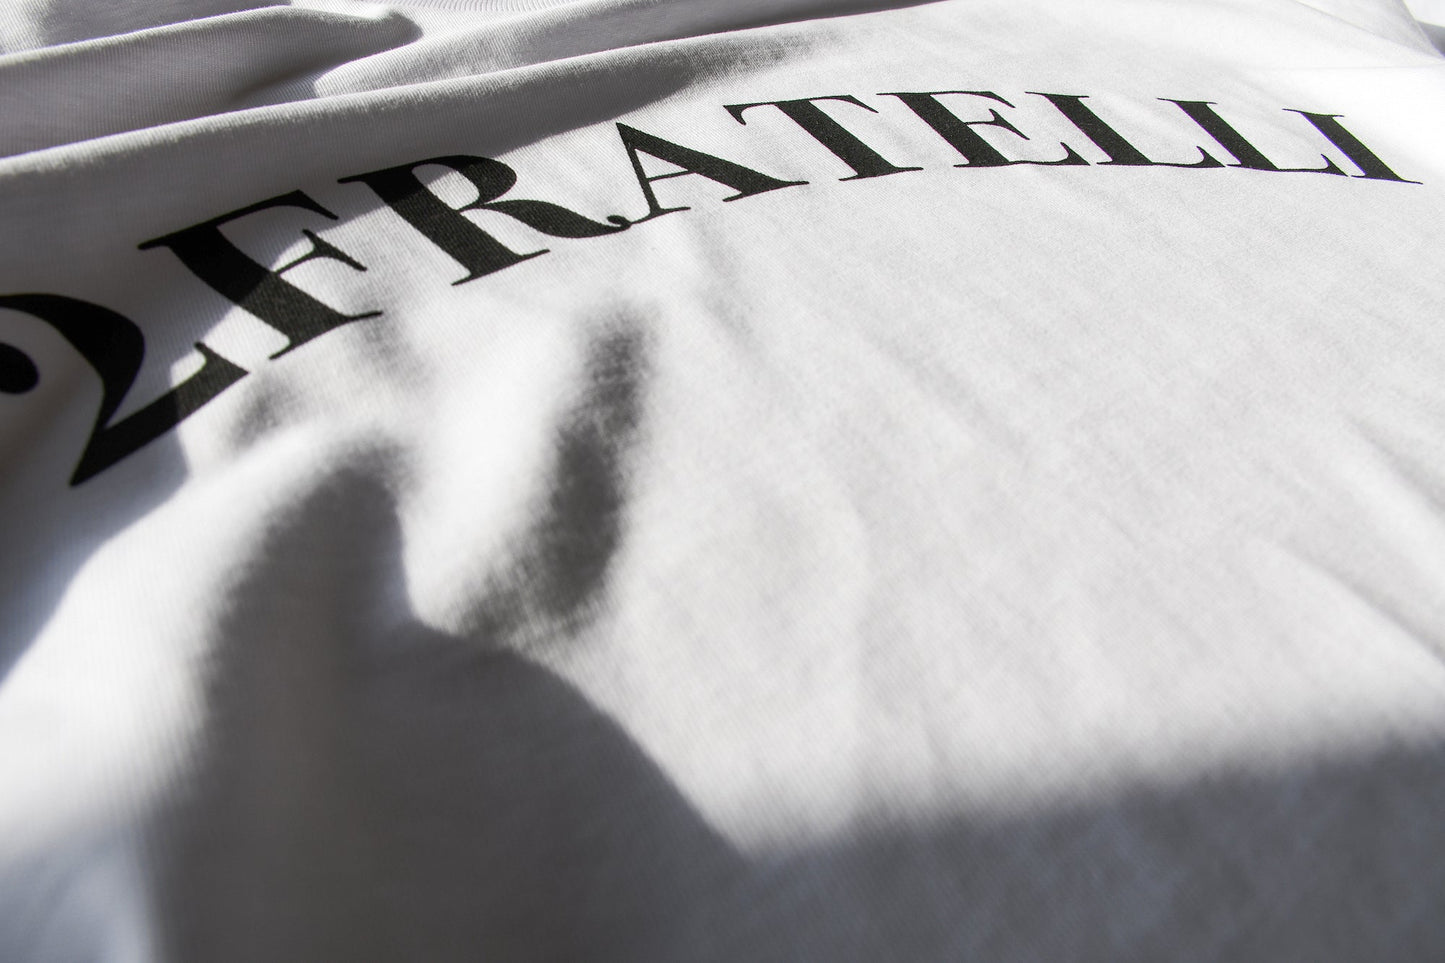 2FRATELLI Oversized front print T-Shirt white (unisex) - 2FRATELLI